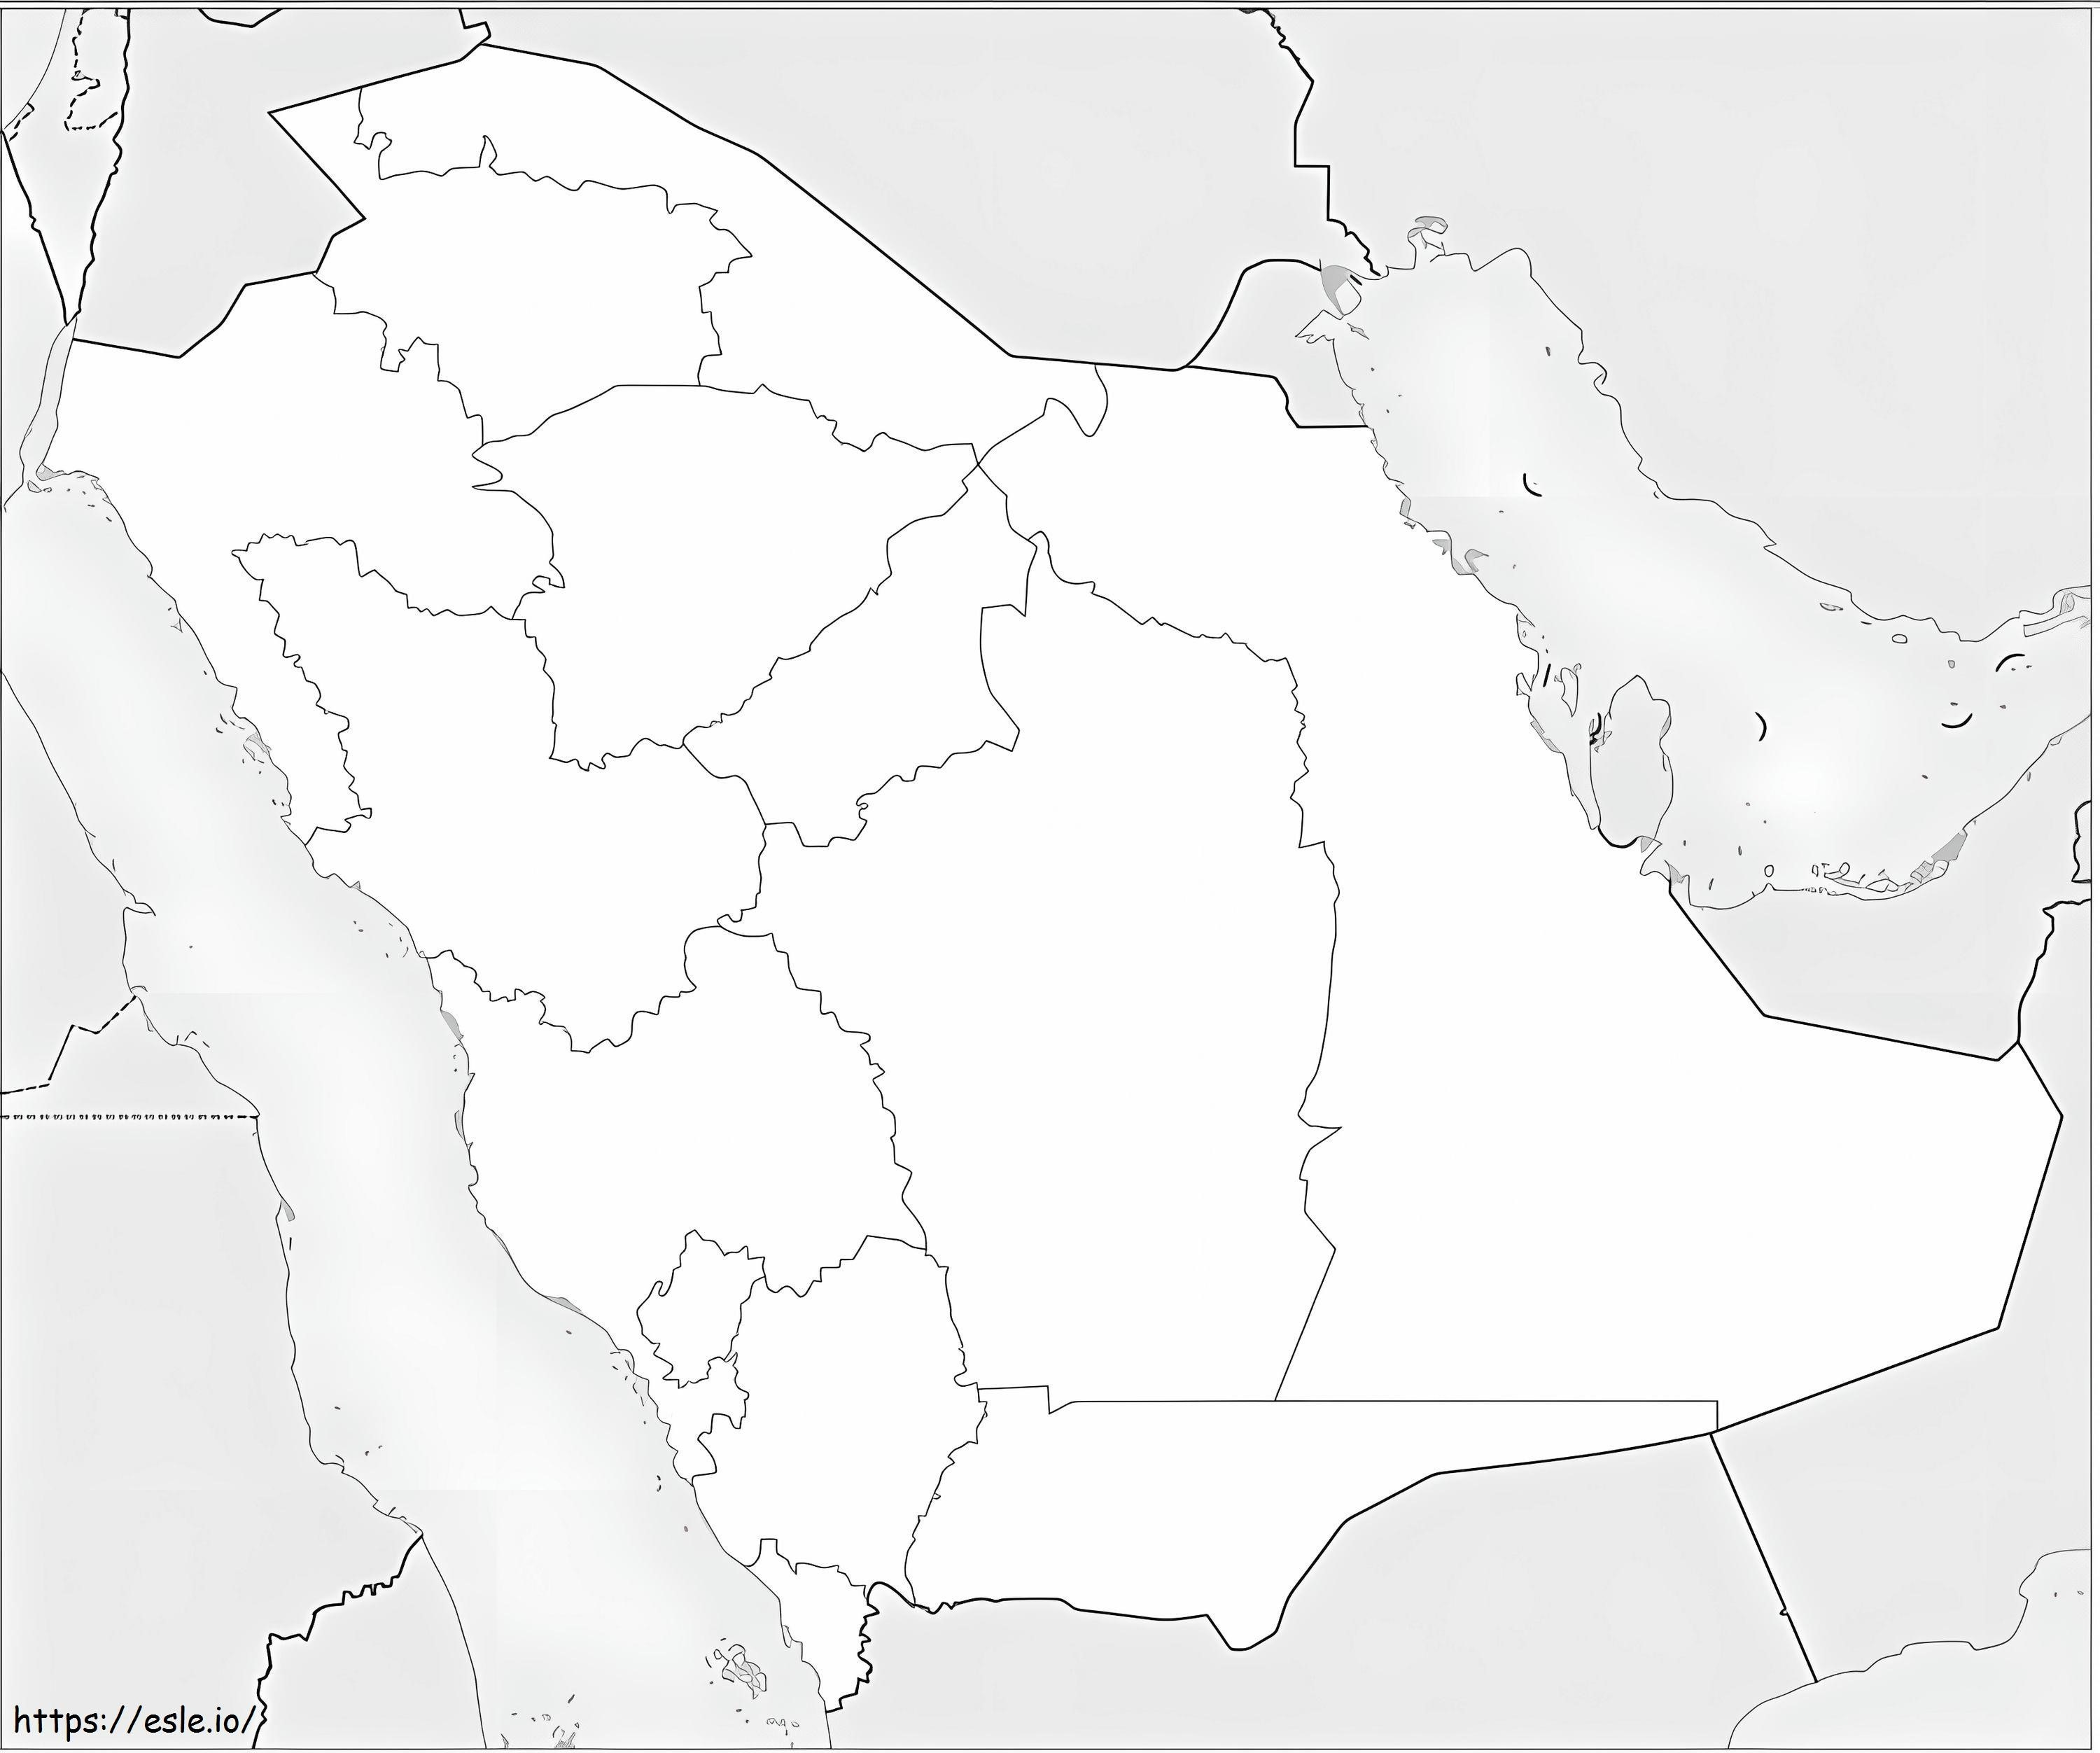 Mapa da Arábia Saudita para colorir